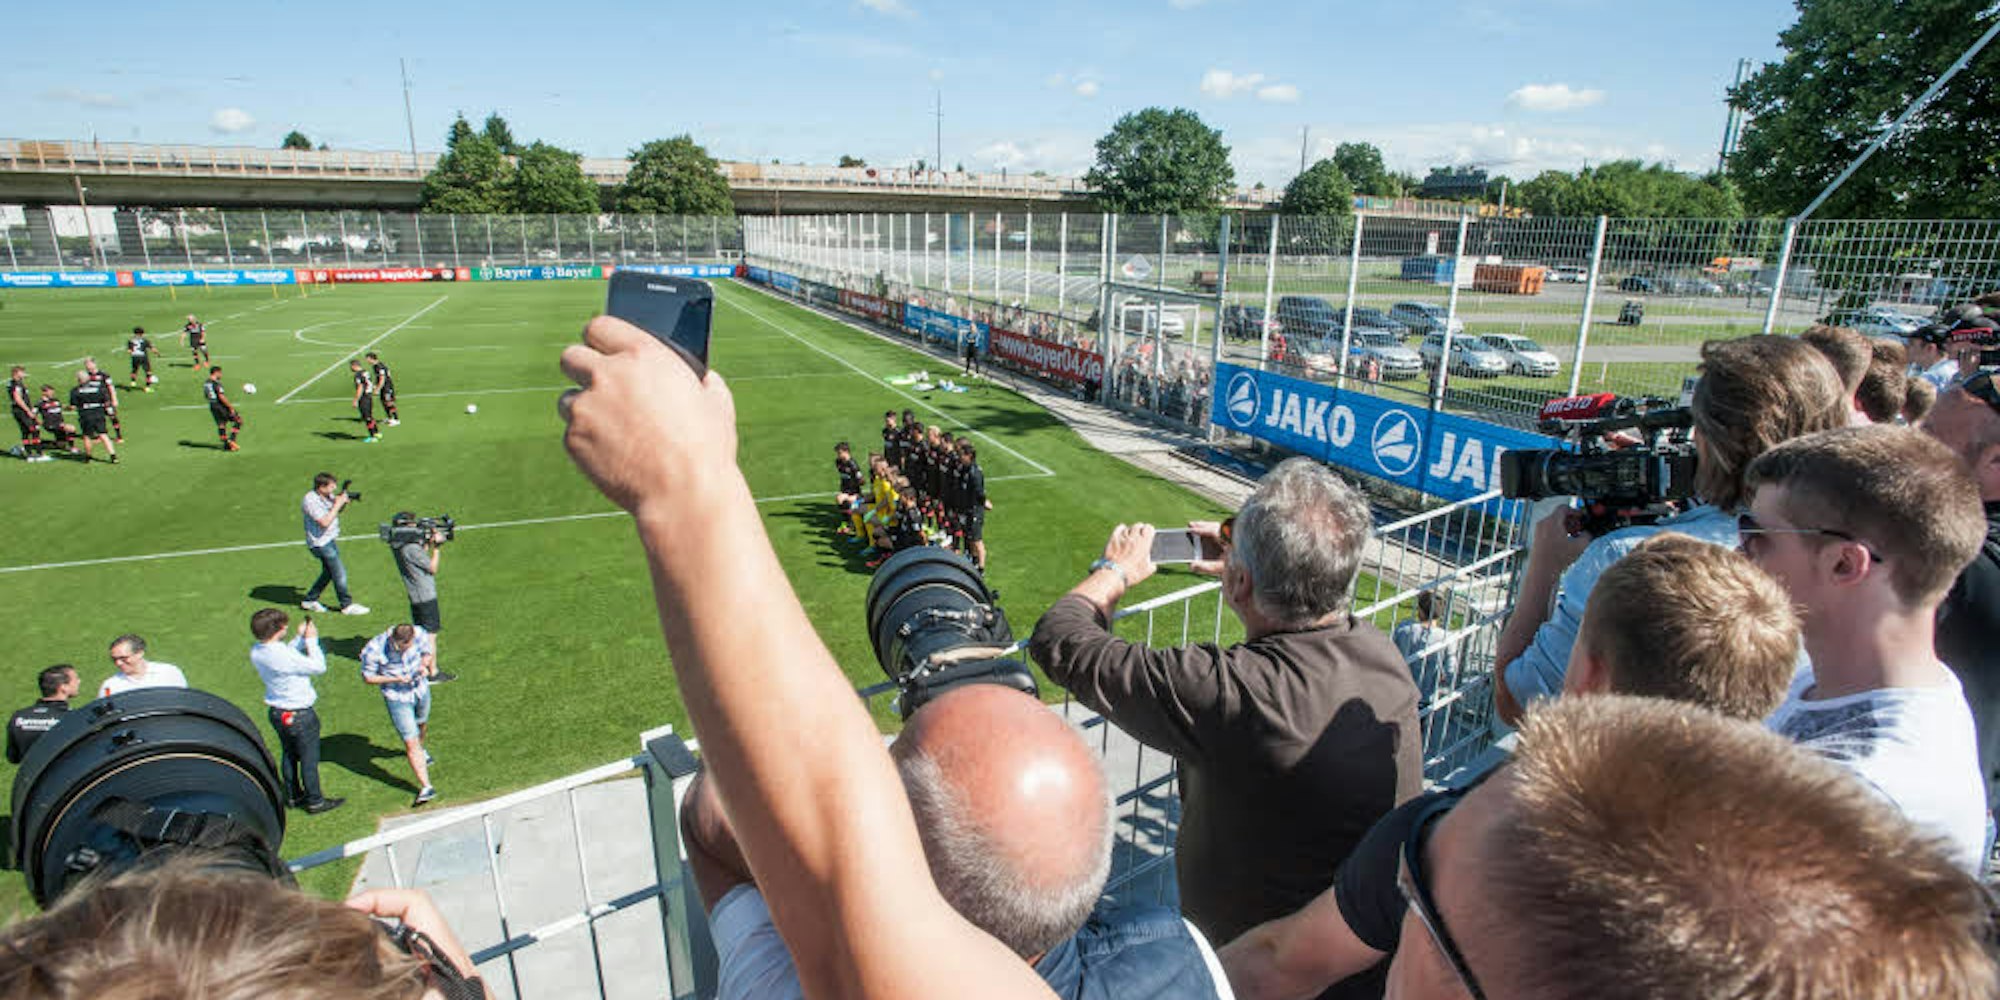 Fotos vom Foto machen: Rund 200 Fans sind am Dienstag zum ersten öffentlichen Training von Bayer 04 Leverkusen gekommen.